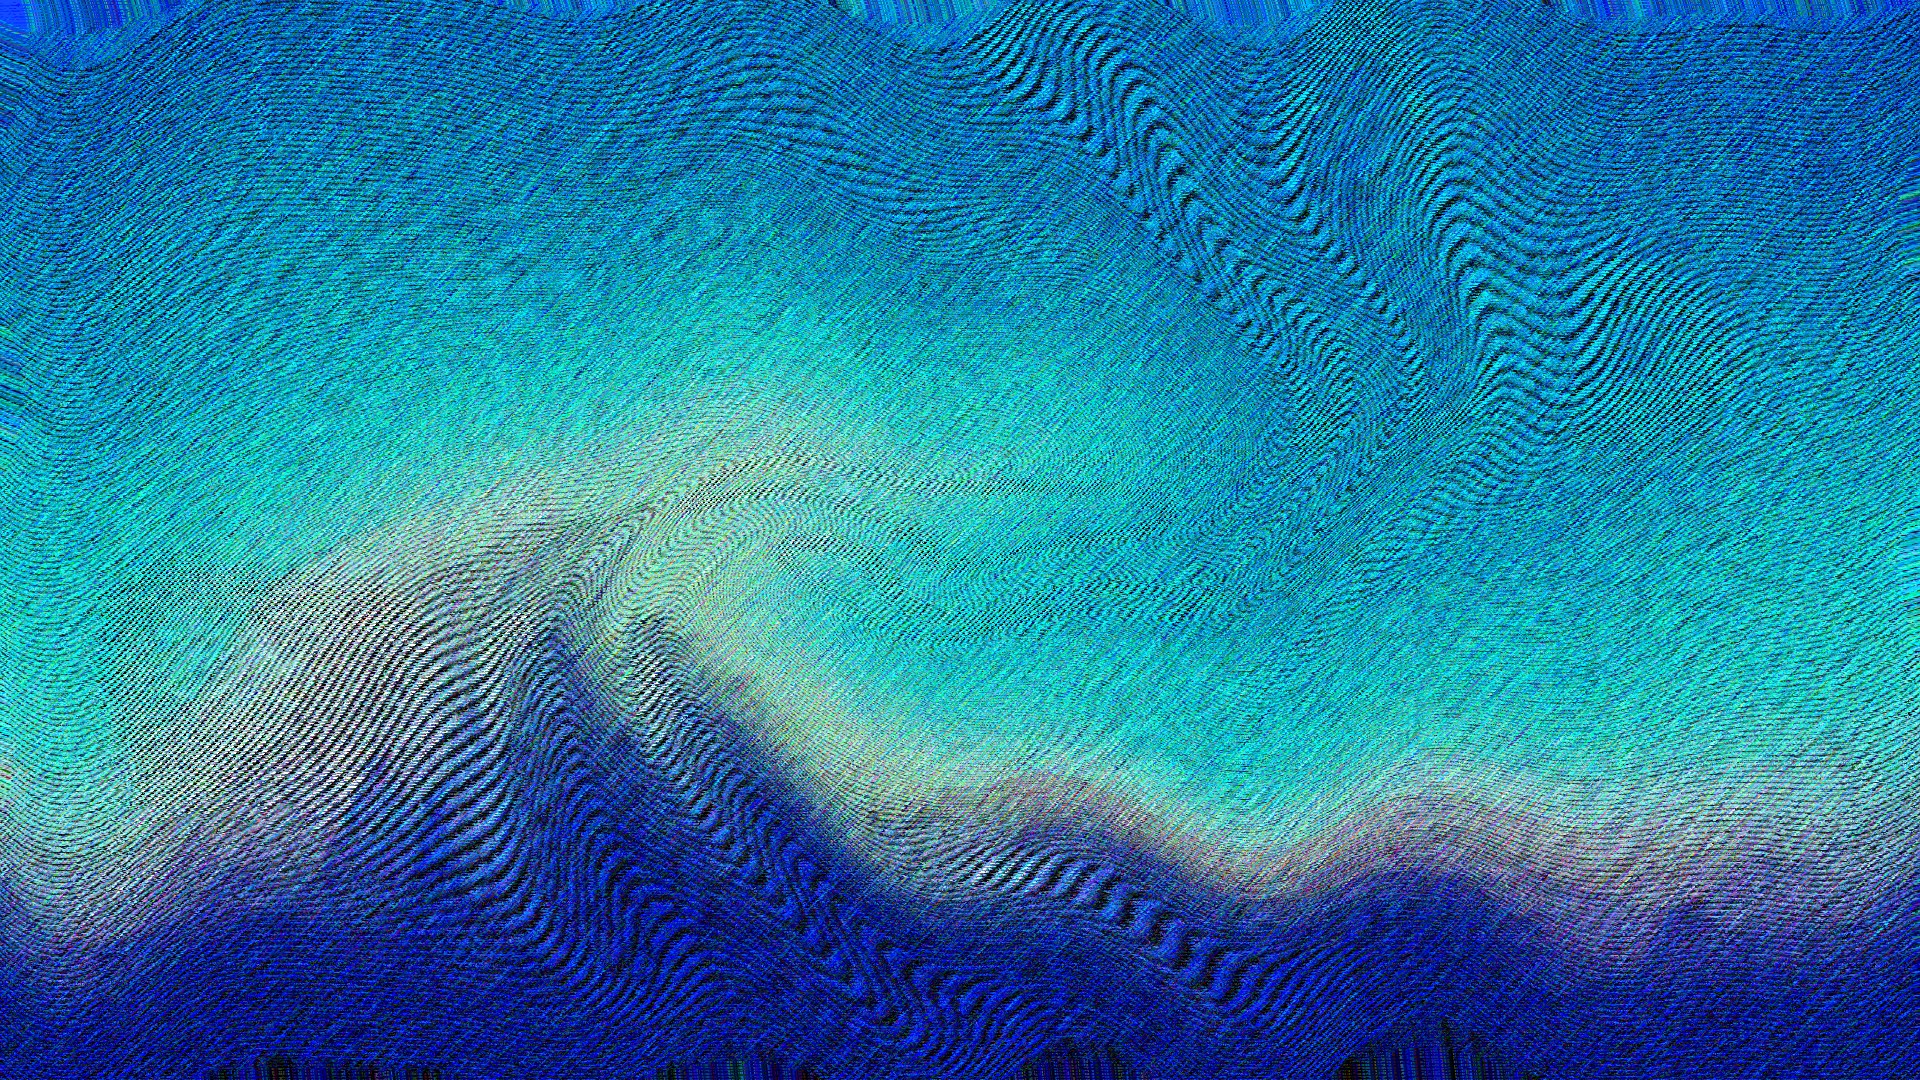 General 1920x1080 digital art texture blue vaporwave cyan